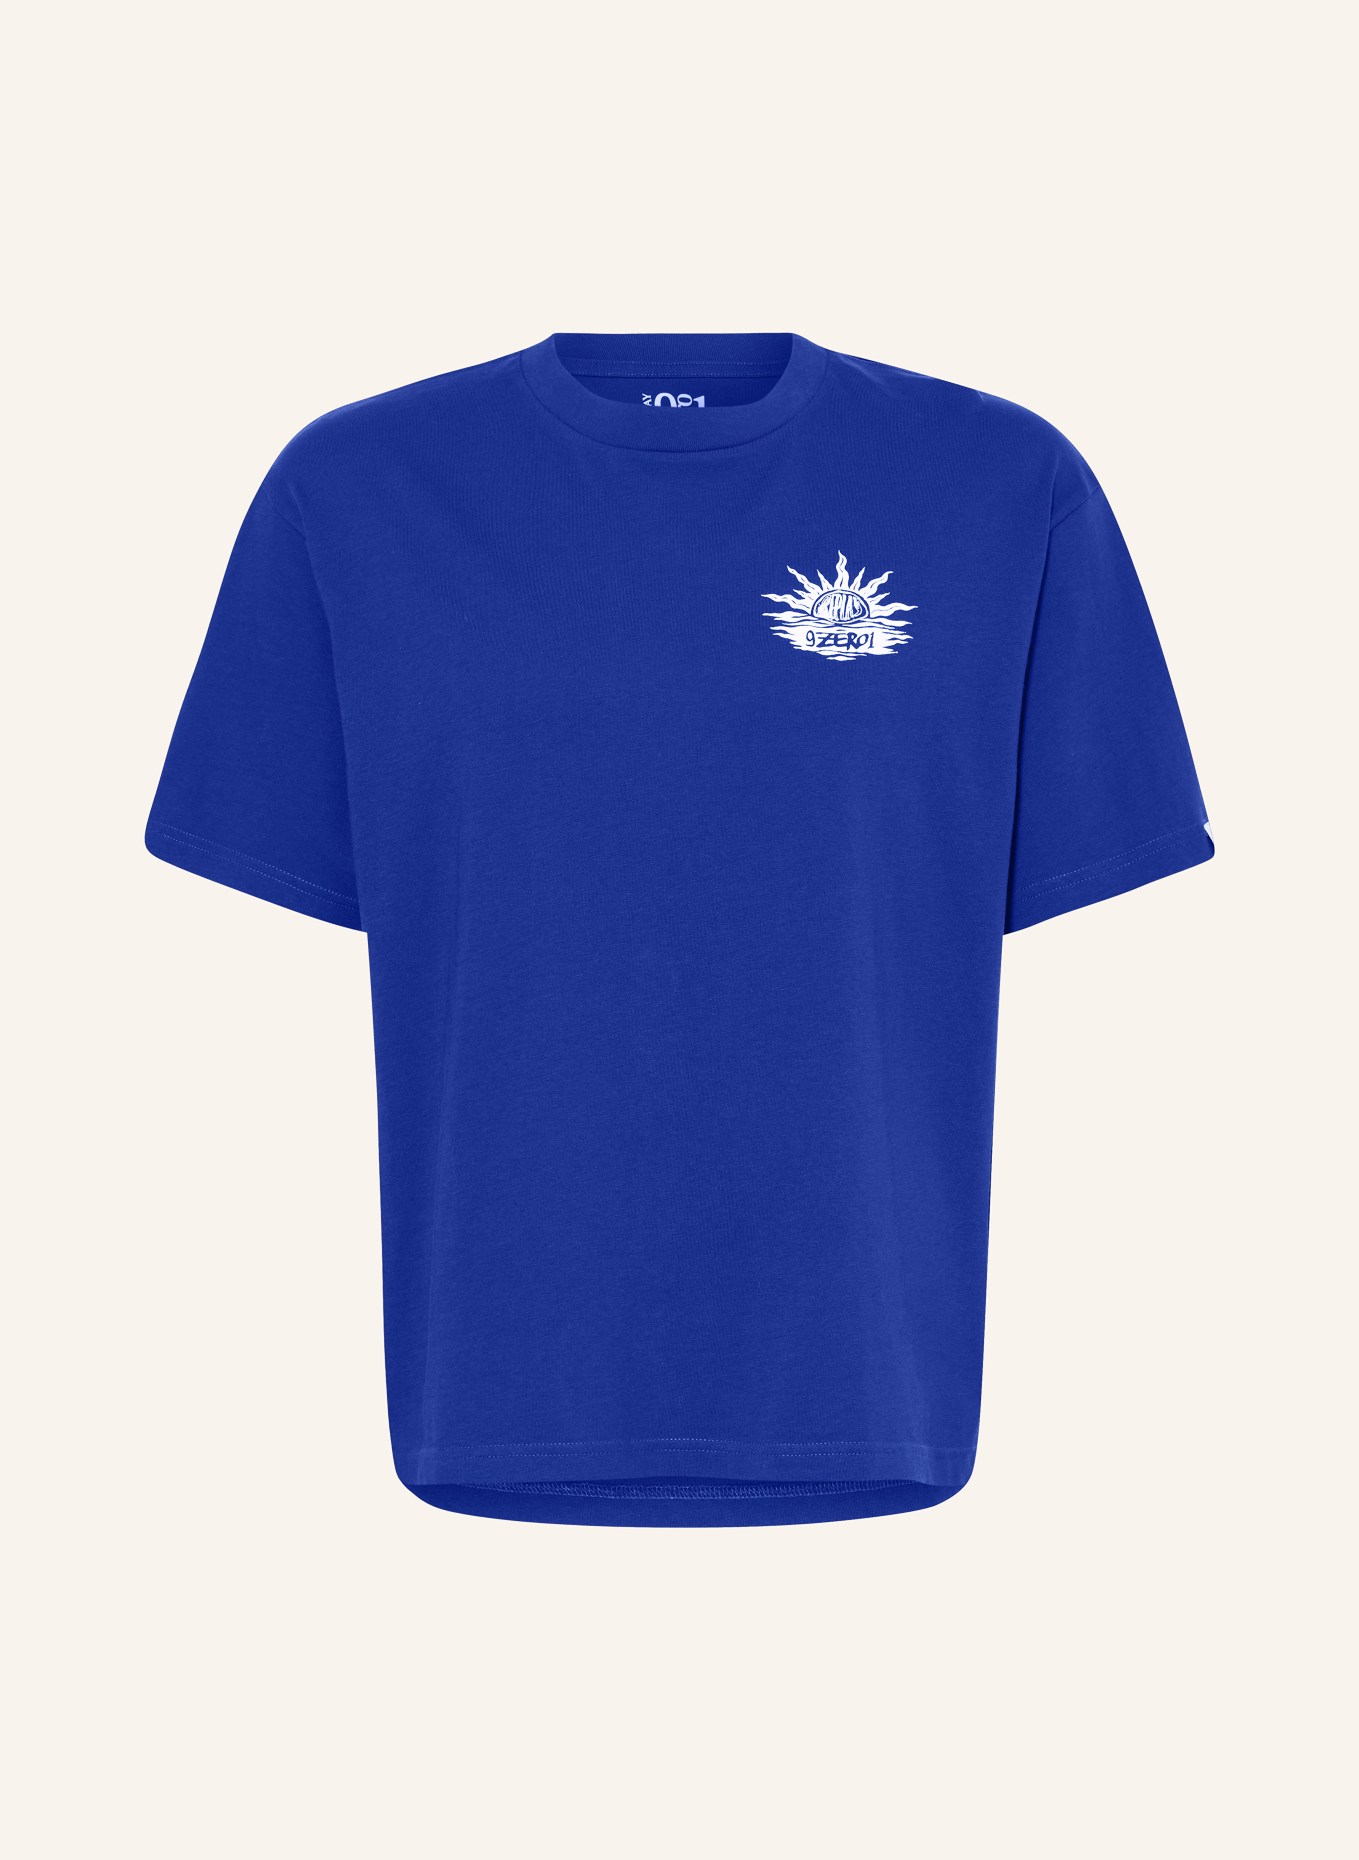 REPLAY T-Shirt, Farbe: 694 TRUE BLUE (Bild 1)